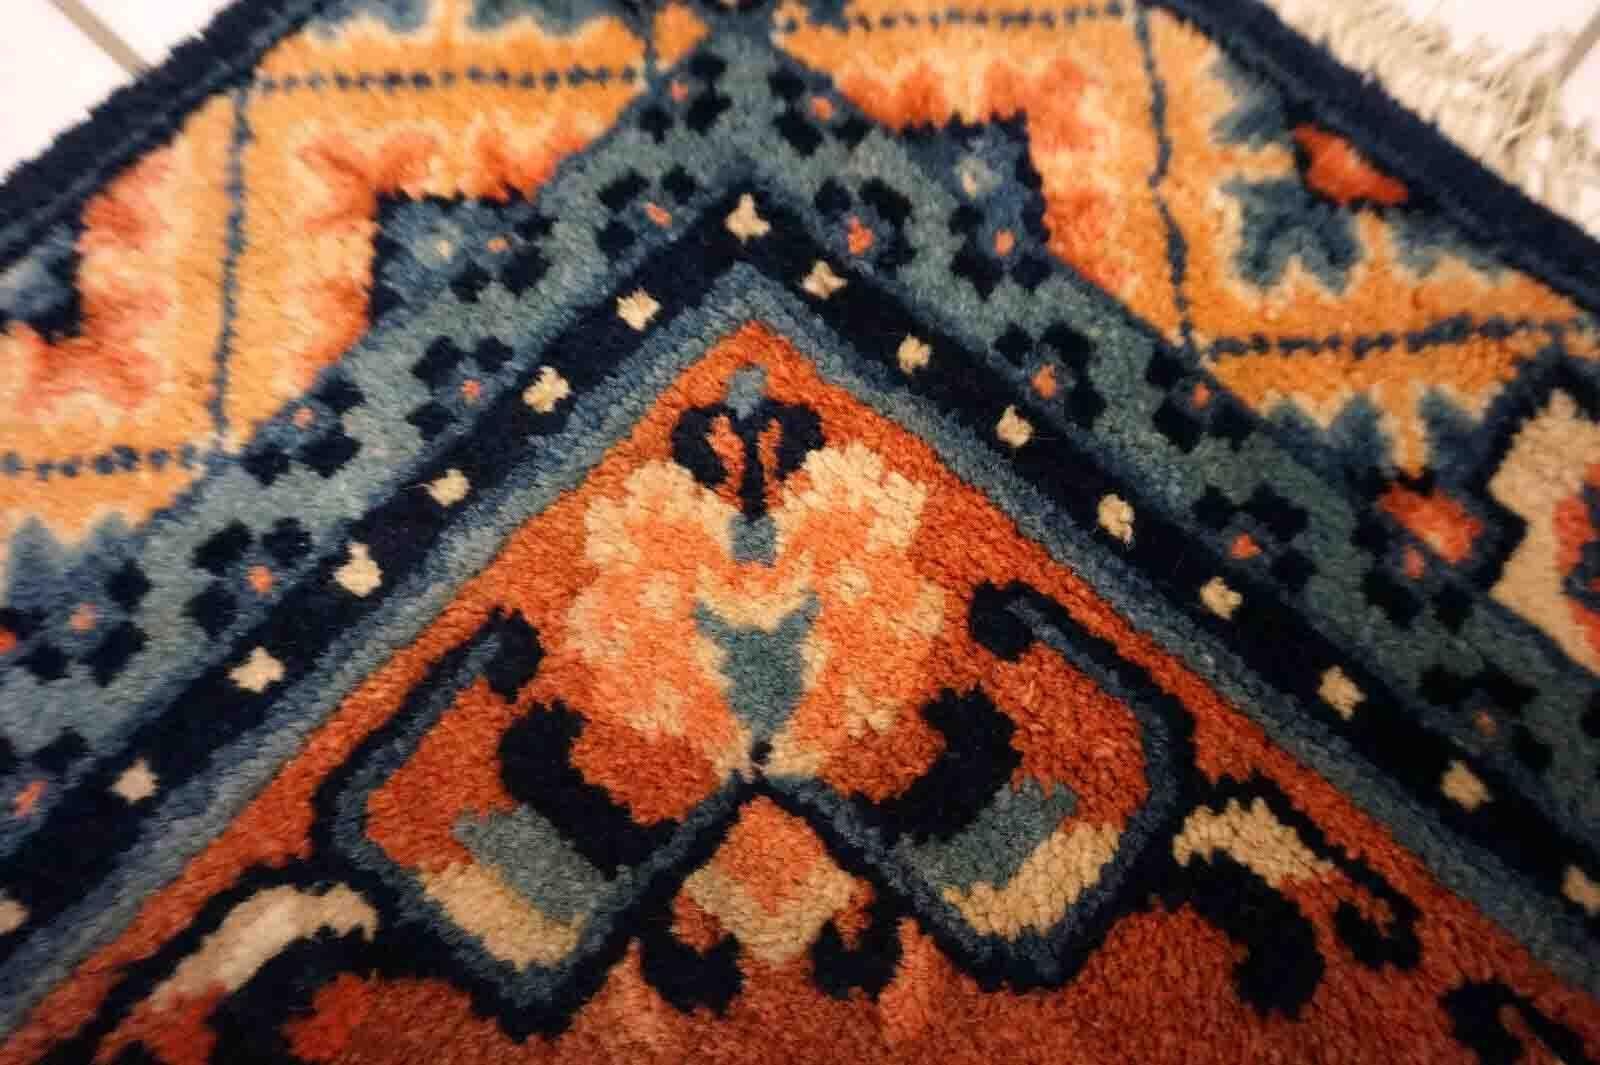 Entrez dans la riche histoire de l'artisanat chinois avec cet exquis tapis antique Ningsha, fabriqué à la main dans les années 1910. Mesurant 1,9' x 2' (59cm x 63cm), ce petit mais superbe tapis présente une conception florale traditionnelle avec un